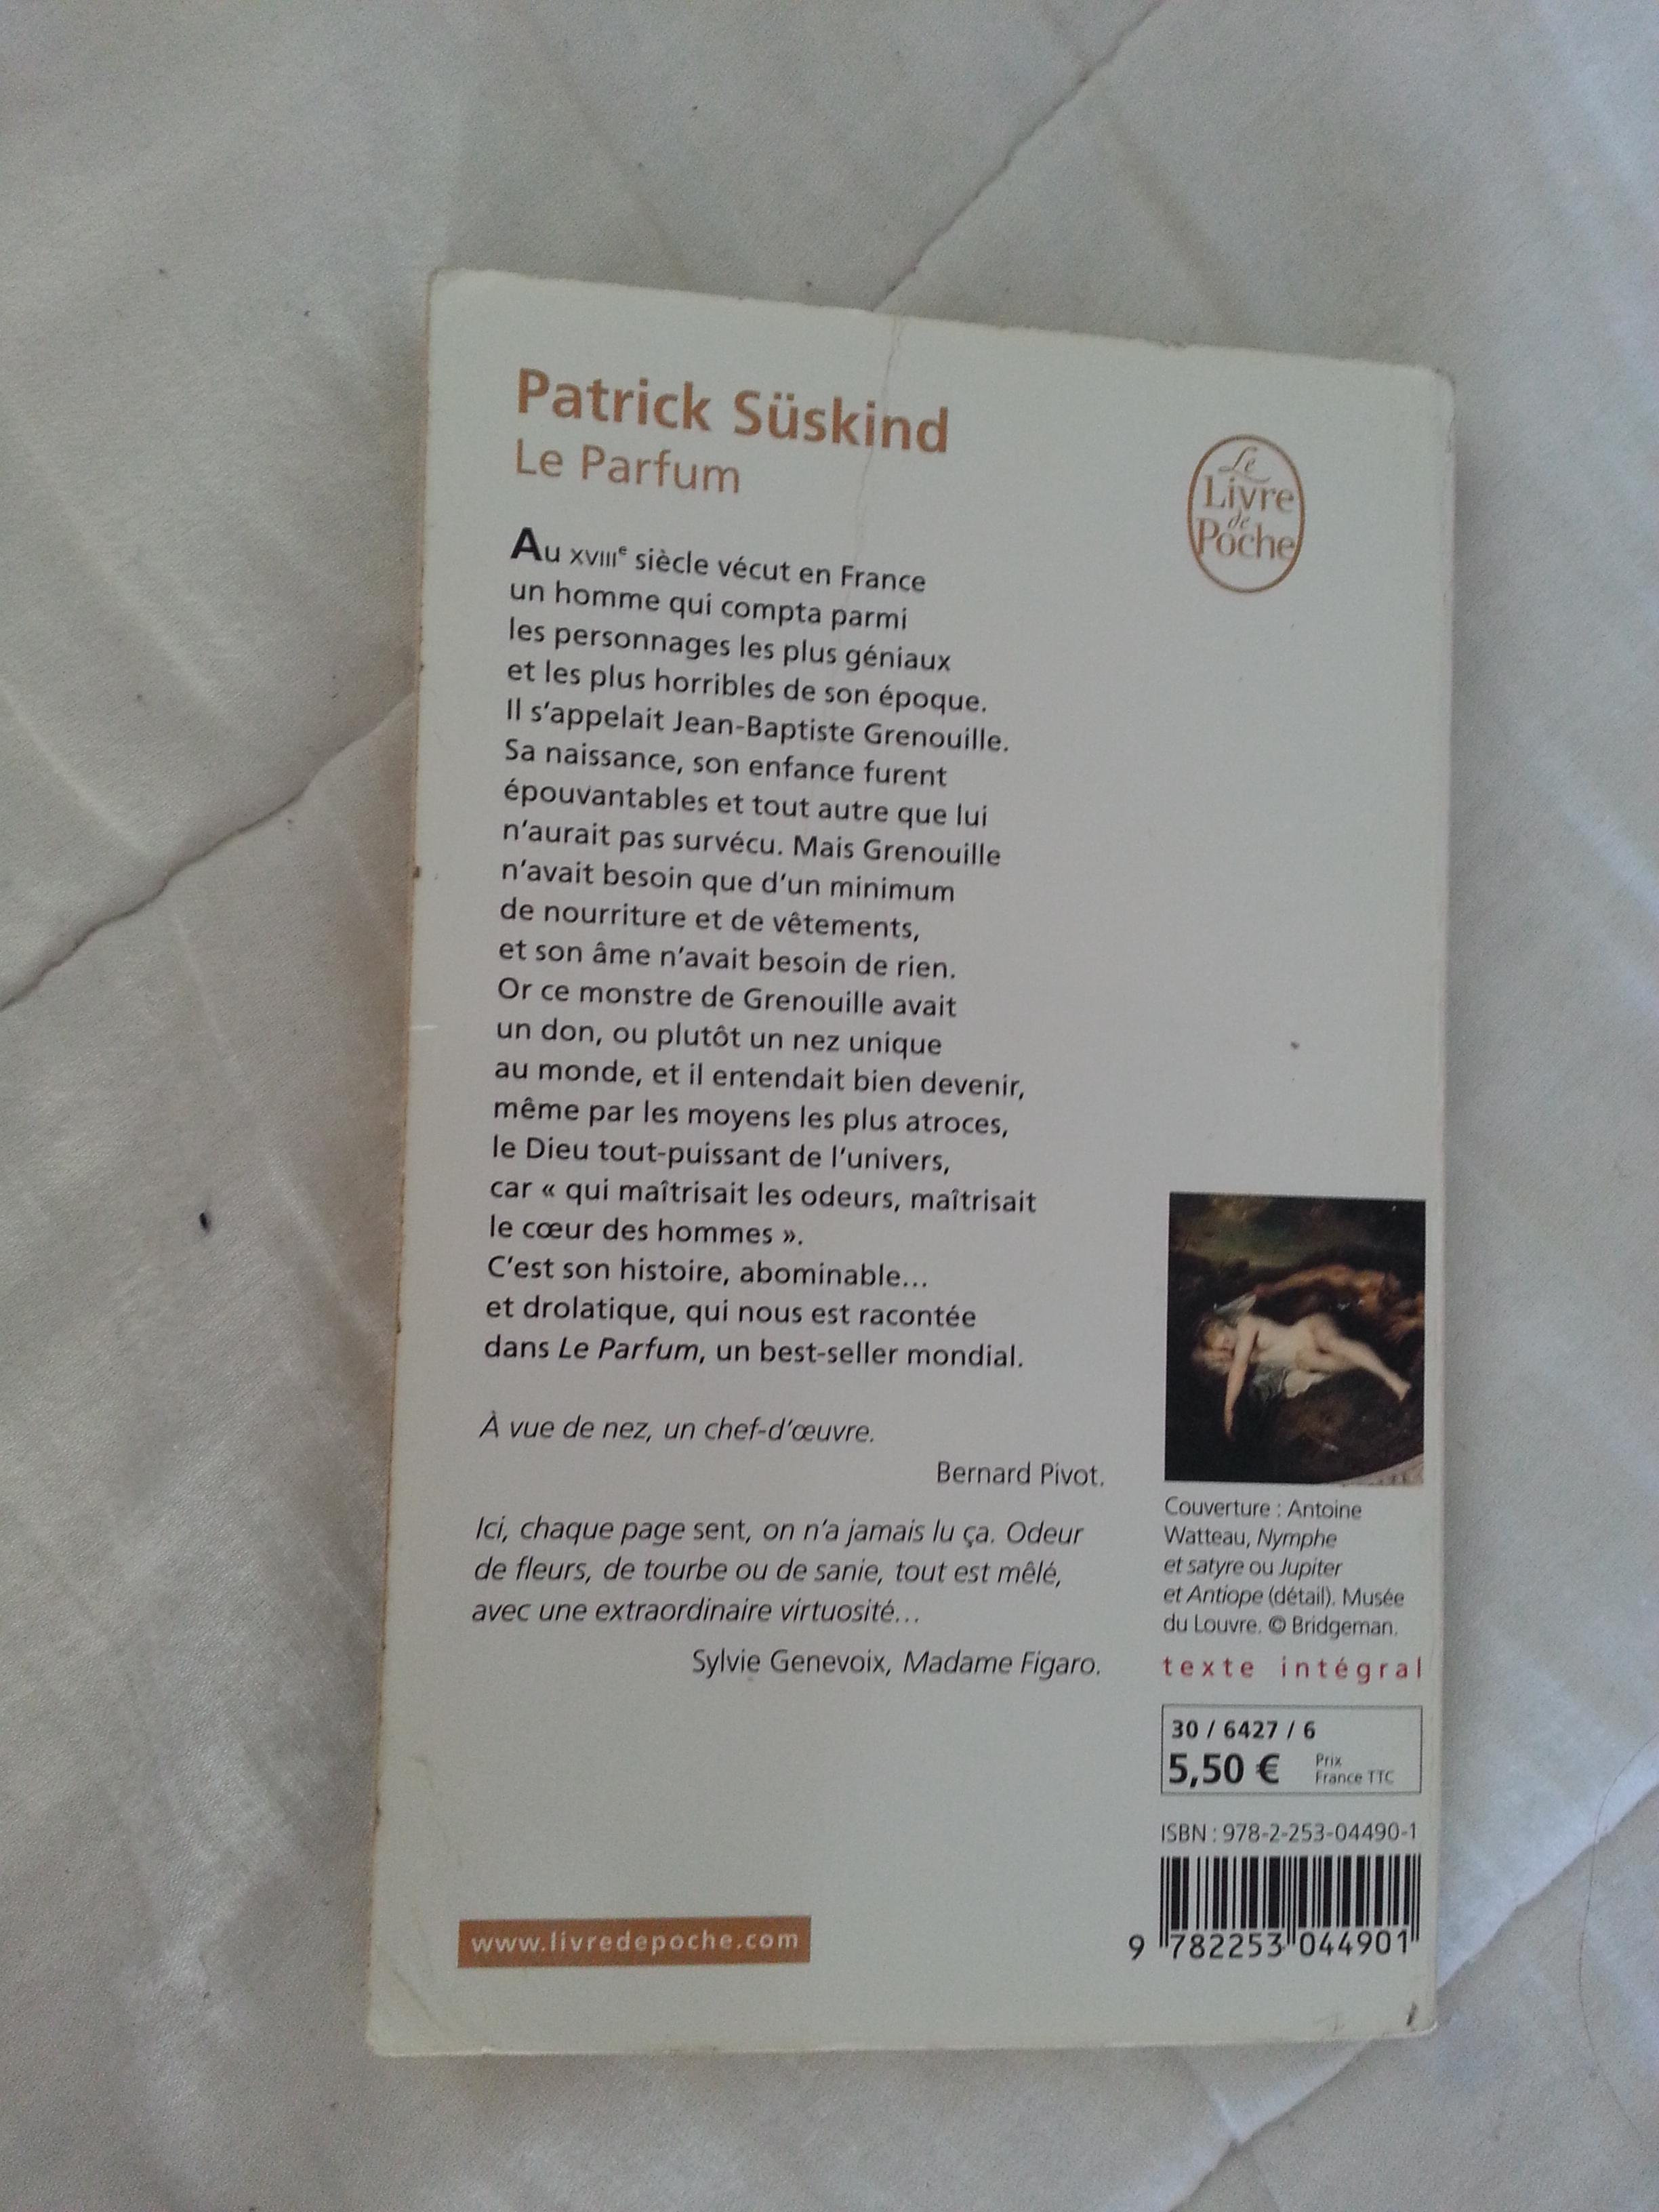 troc de troc le parfum de patrick sÜskind - livre de poche image 1